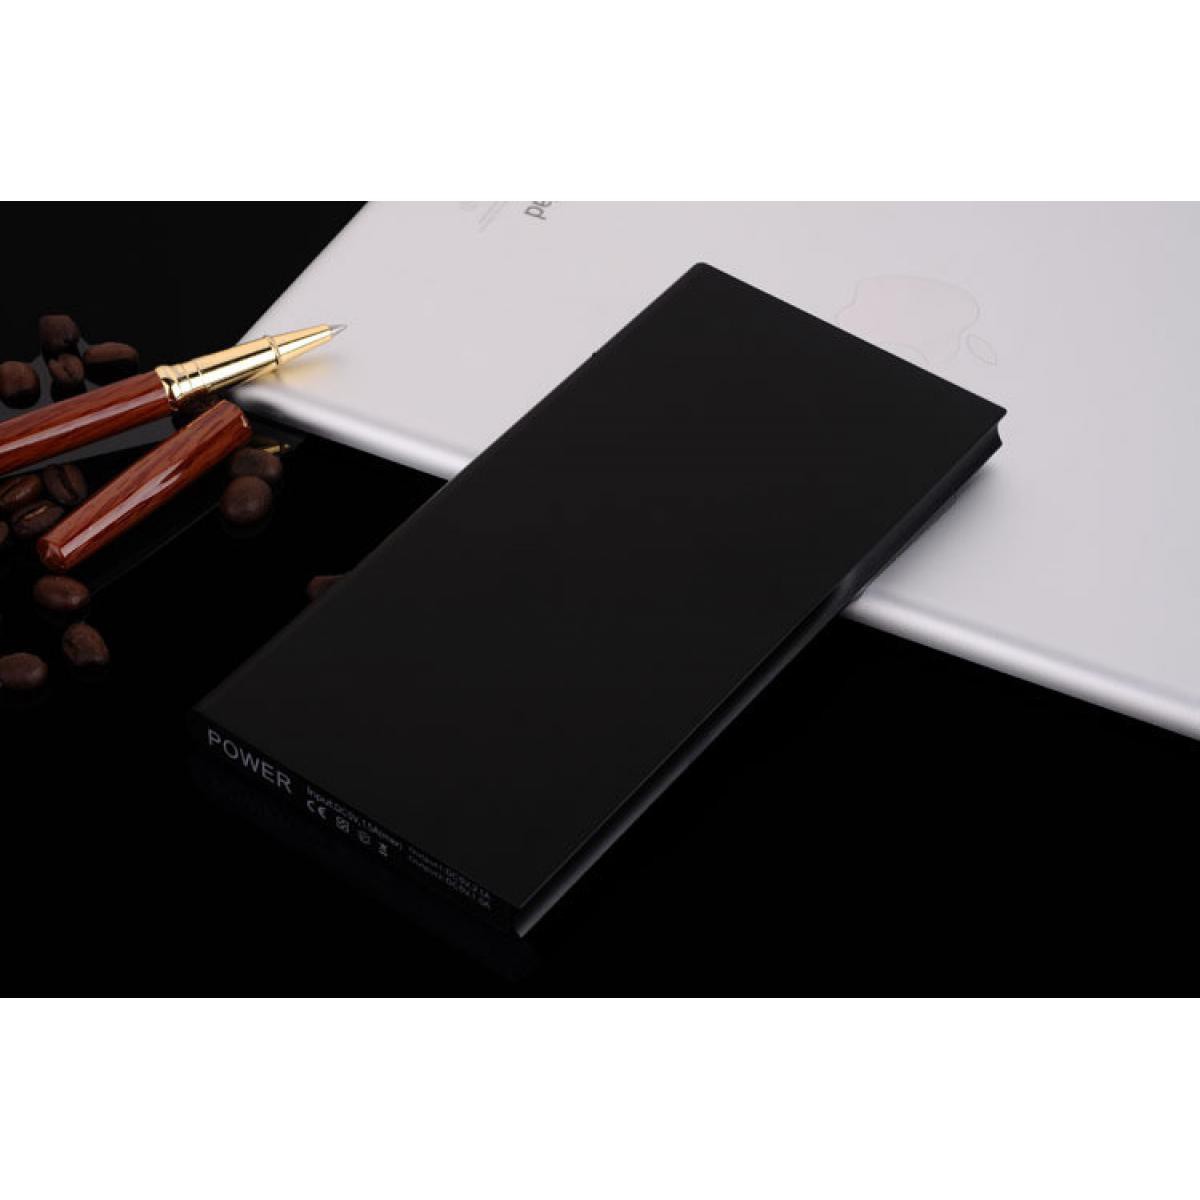 Shot - Batterie Externe Plate pour XIAOMI Mi 9T Smartphone Tablette Chargeur Power Bank 6000mAh 2 Port USB (NOIR) - Chargeur secteur téléphone